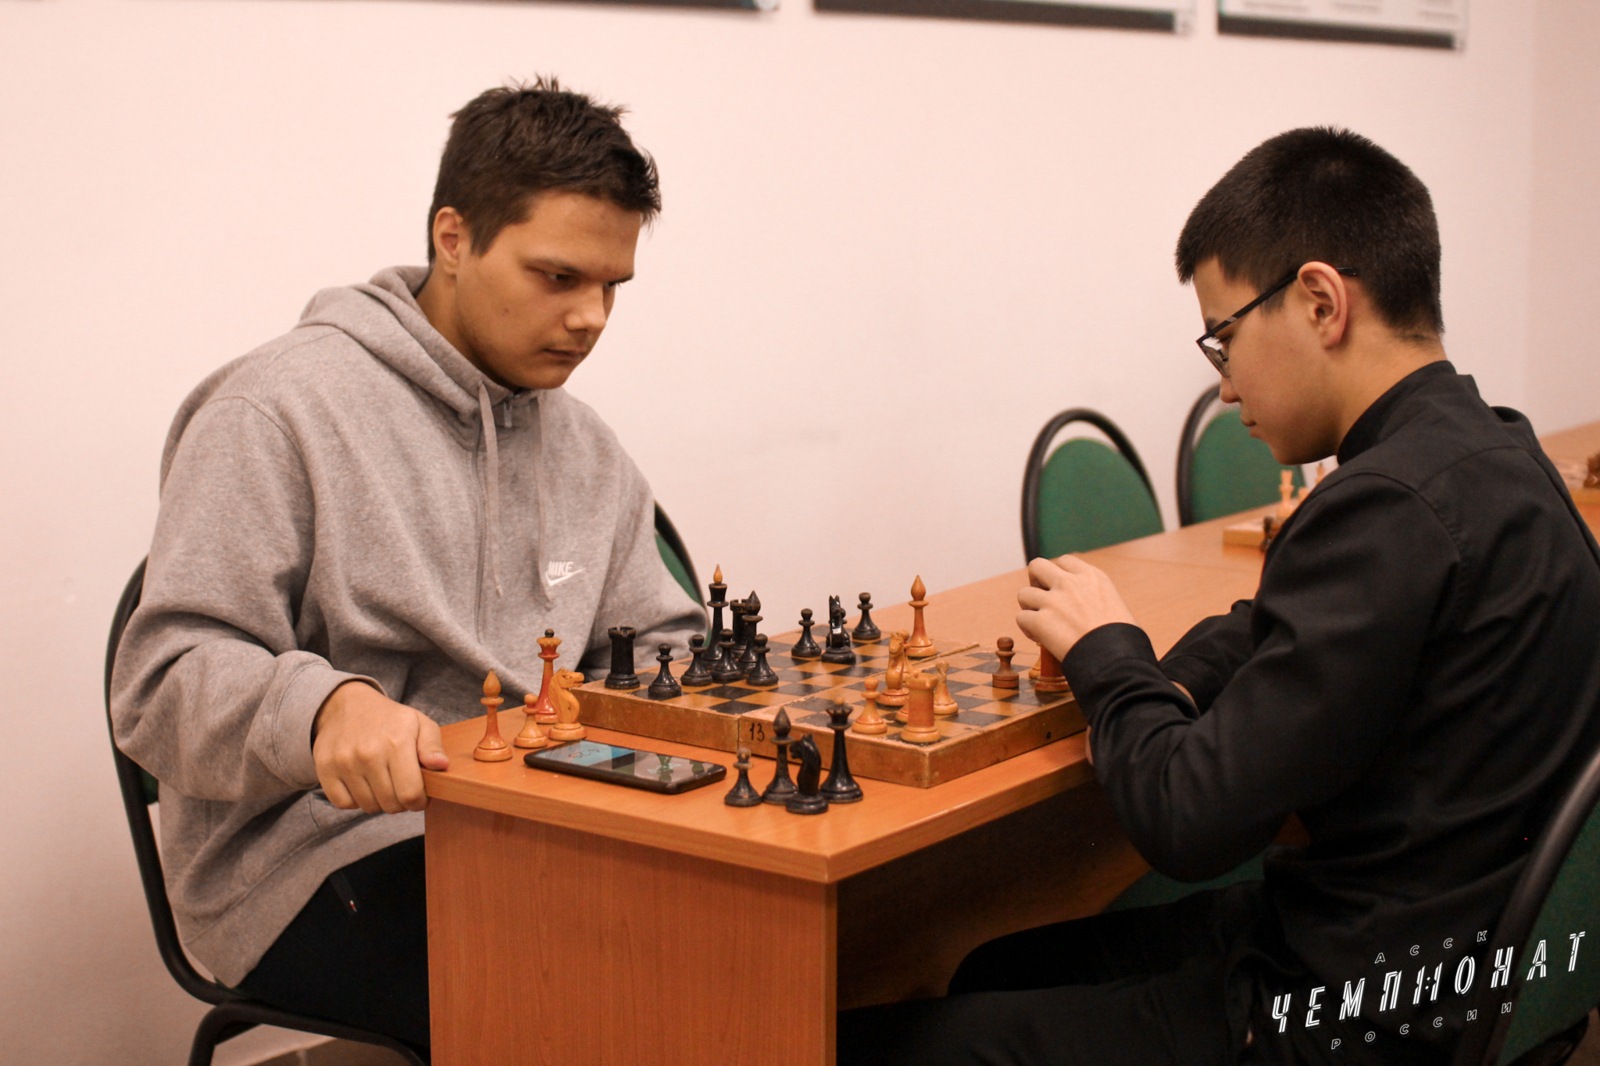 Участники шахматного турнира играют в зале где имеются 8 столиков